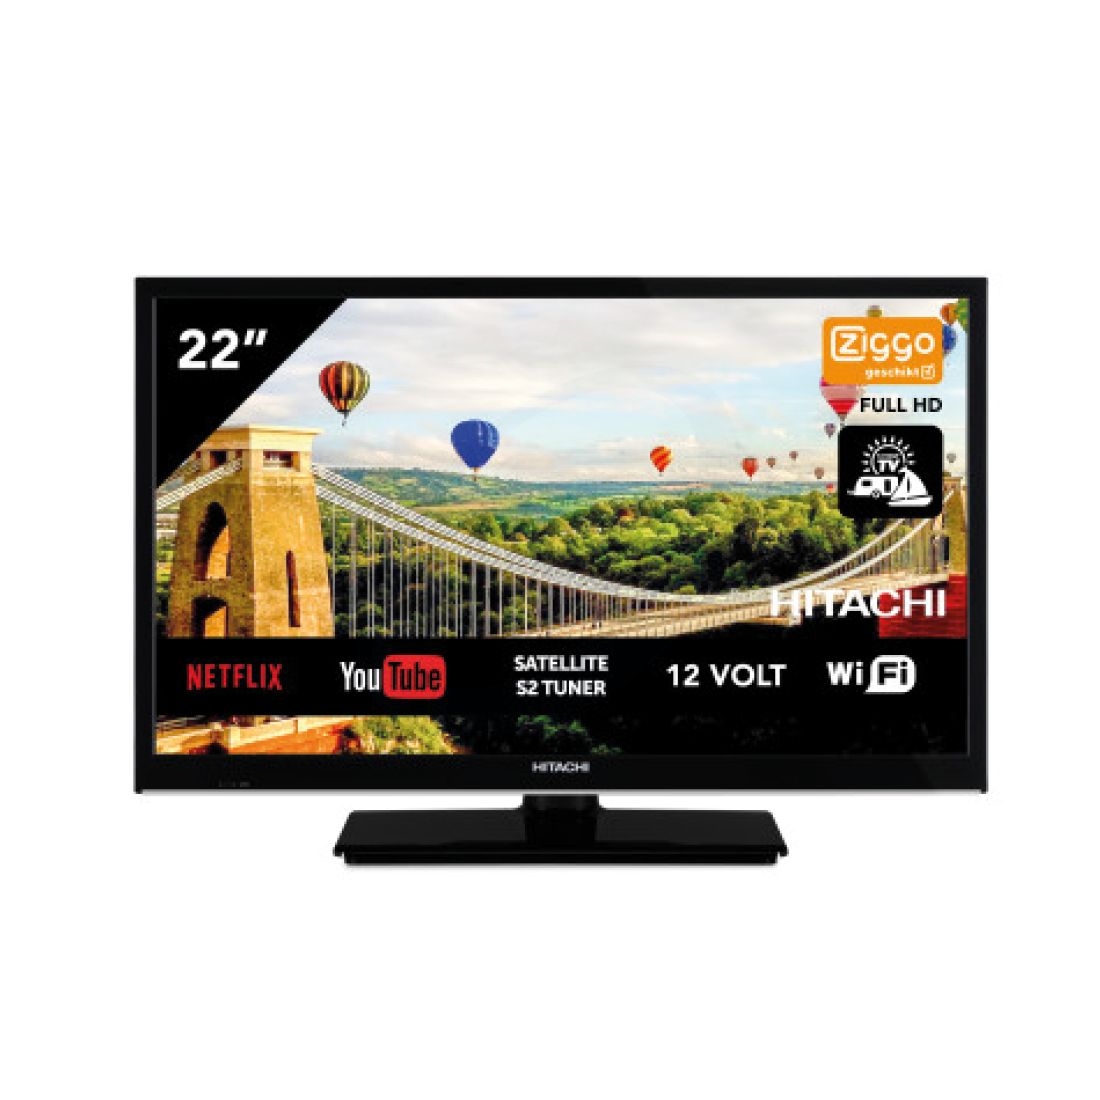 Hitachi 22HE4002 Android TV Smart Wifi 22 Zoll 56cm Full HD LED TV DVB-S2/C/T2 - 12V / 230Volt